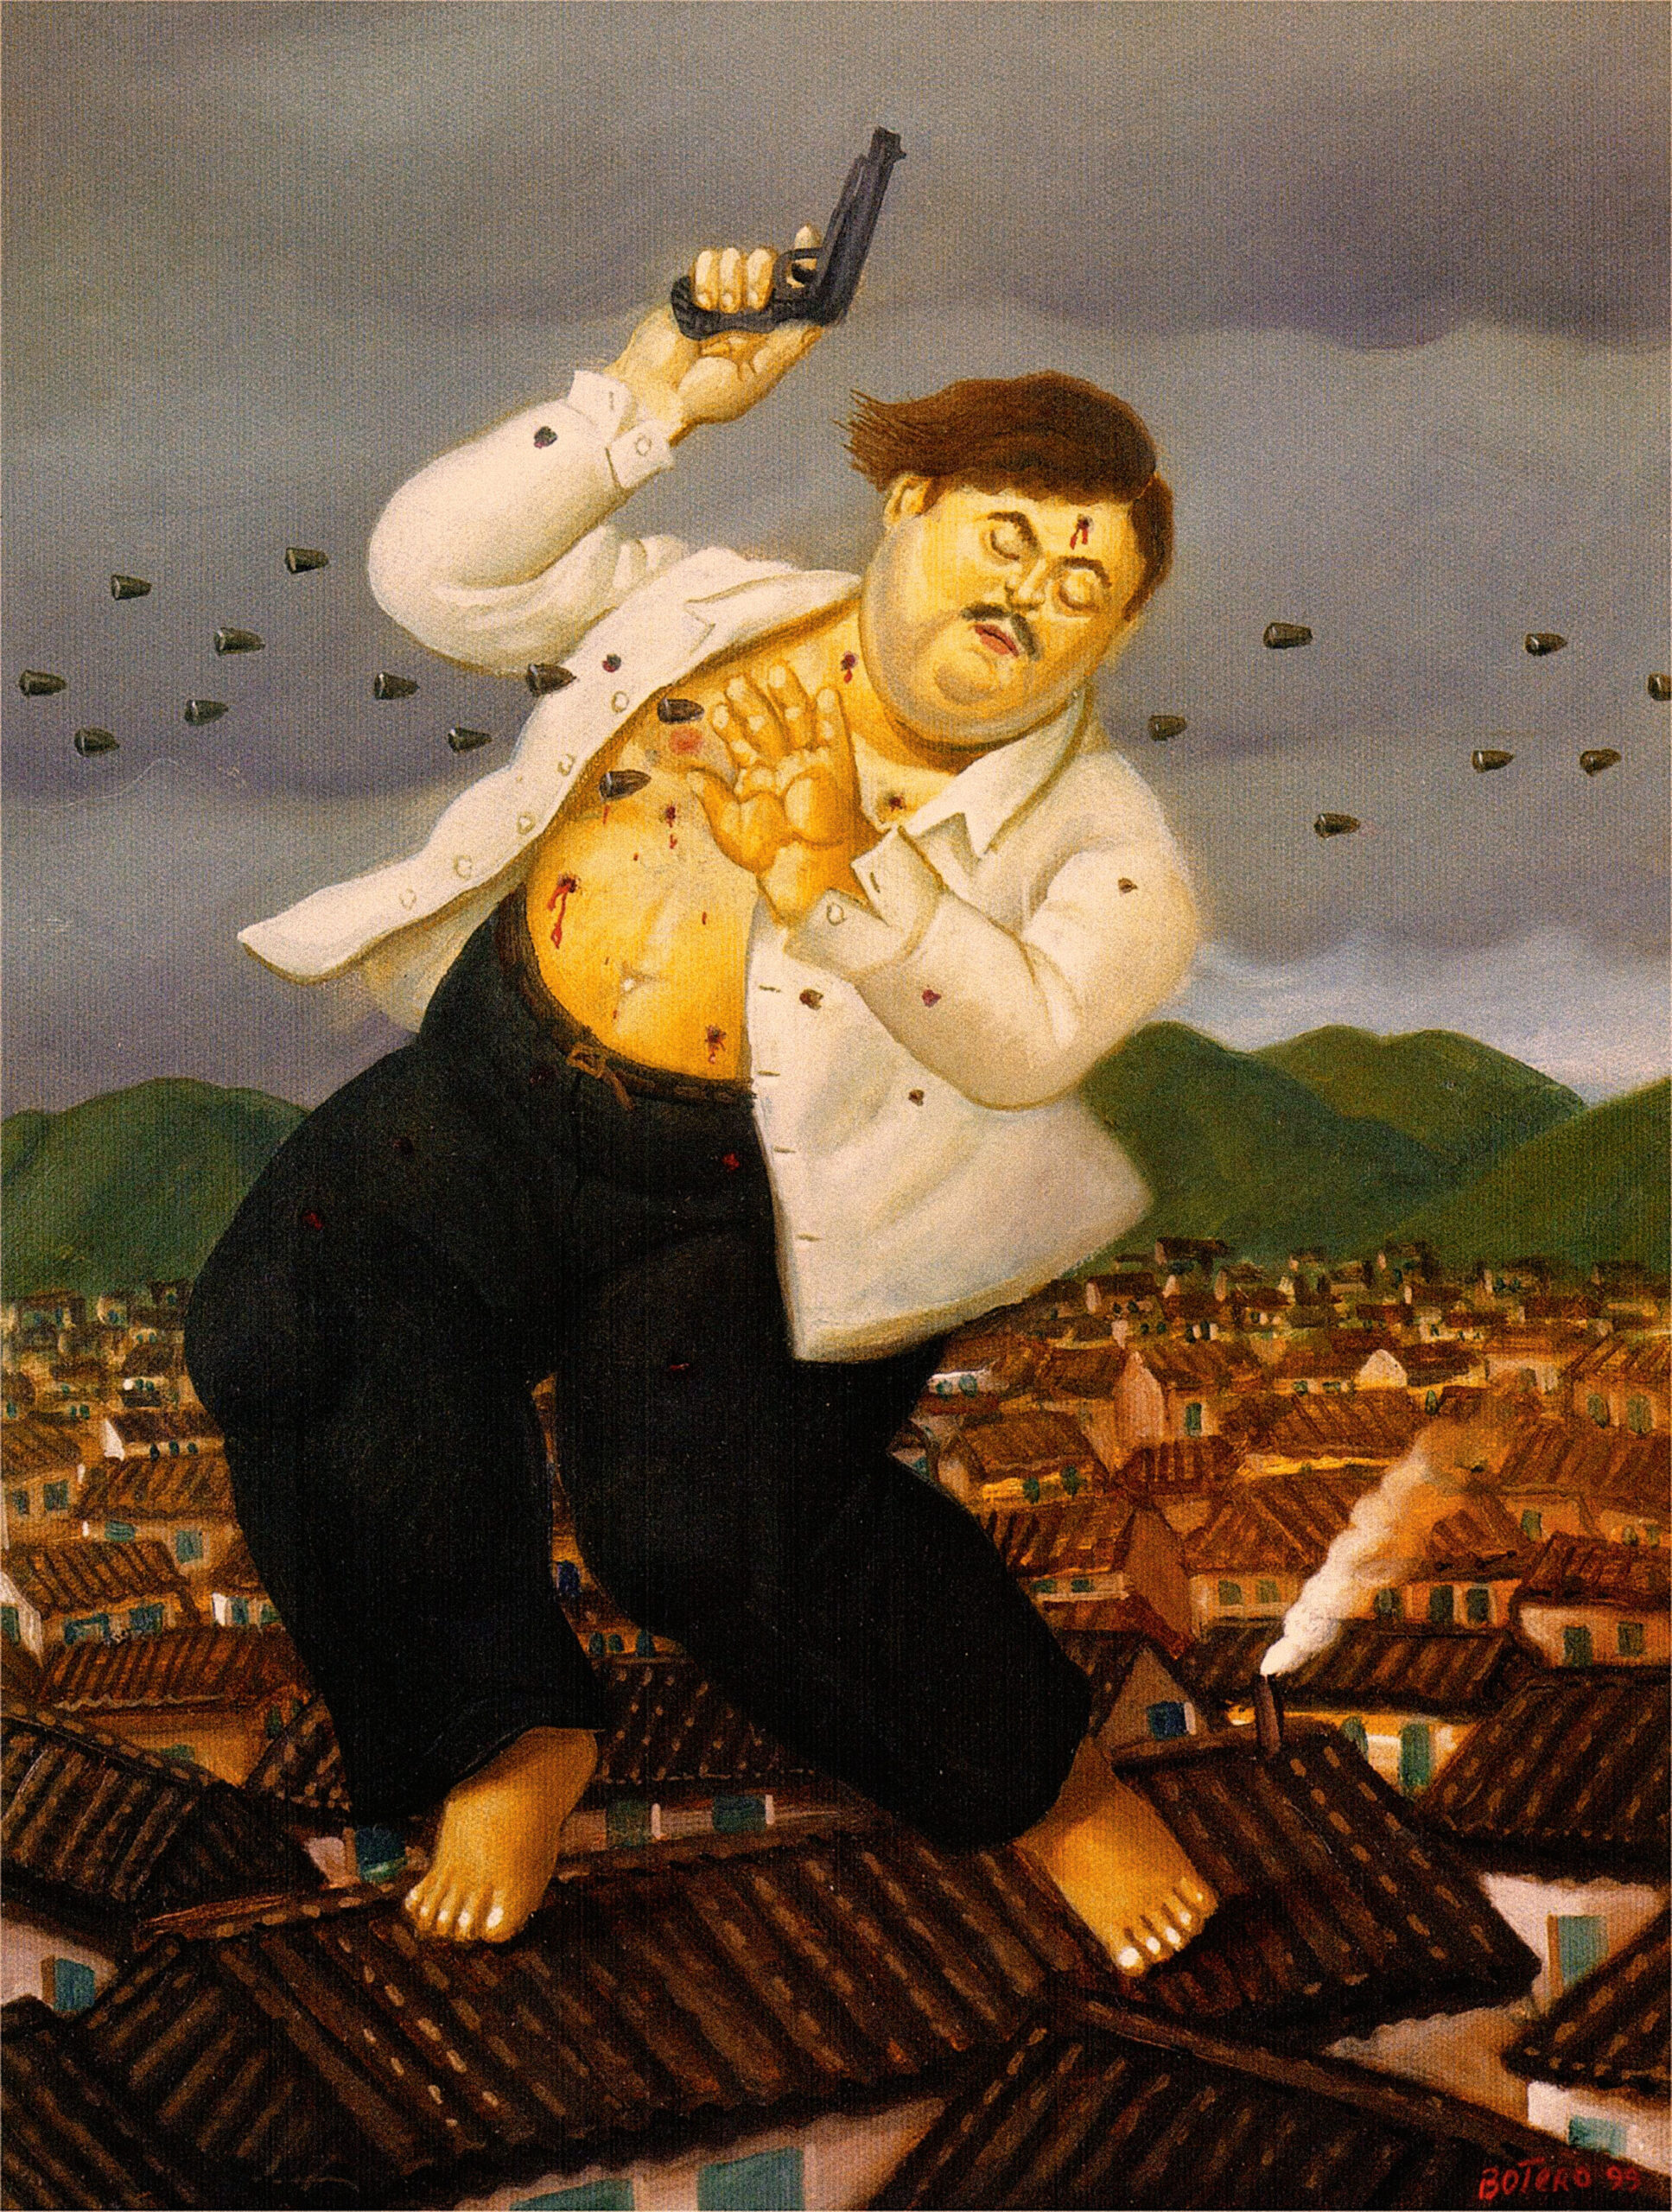 Poslední okamžiky Pabla Escobara se staly inspirací i pro nejslavnějšího kolumbijského malíře Fernanda Botera.